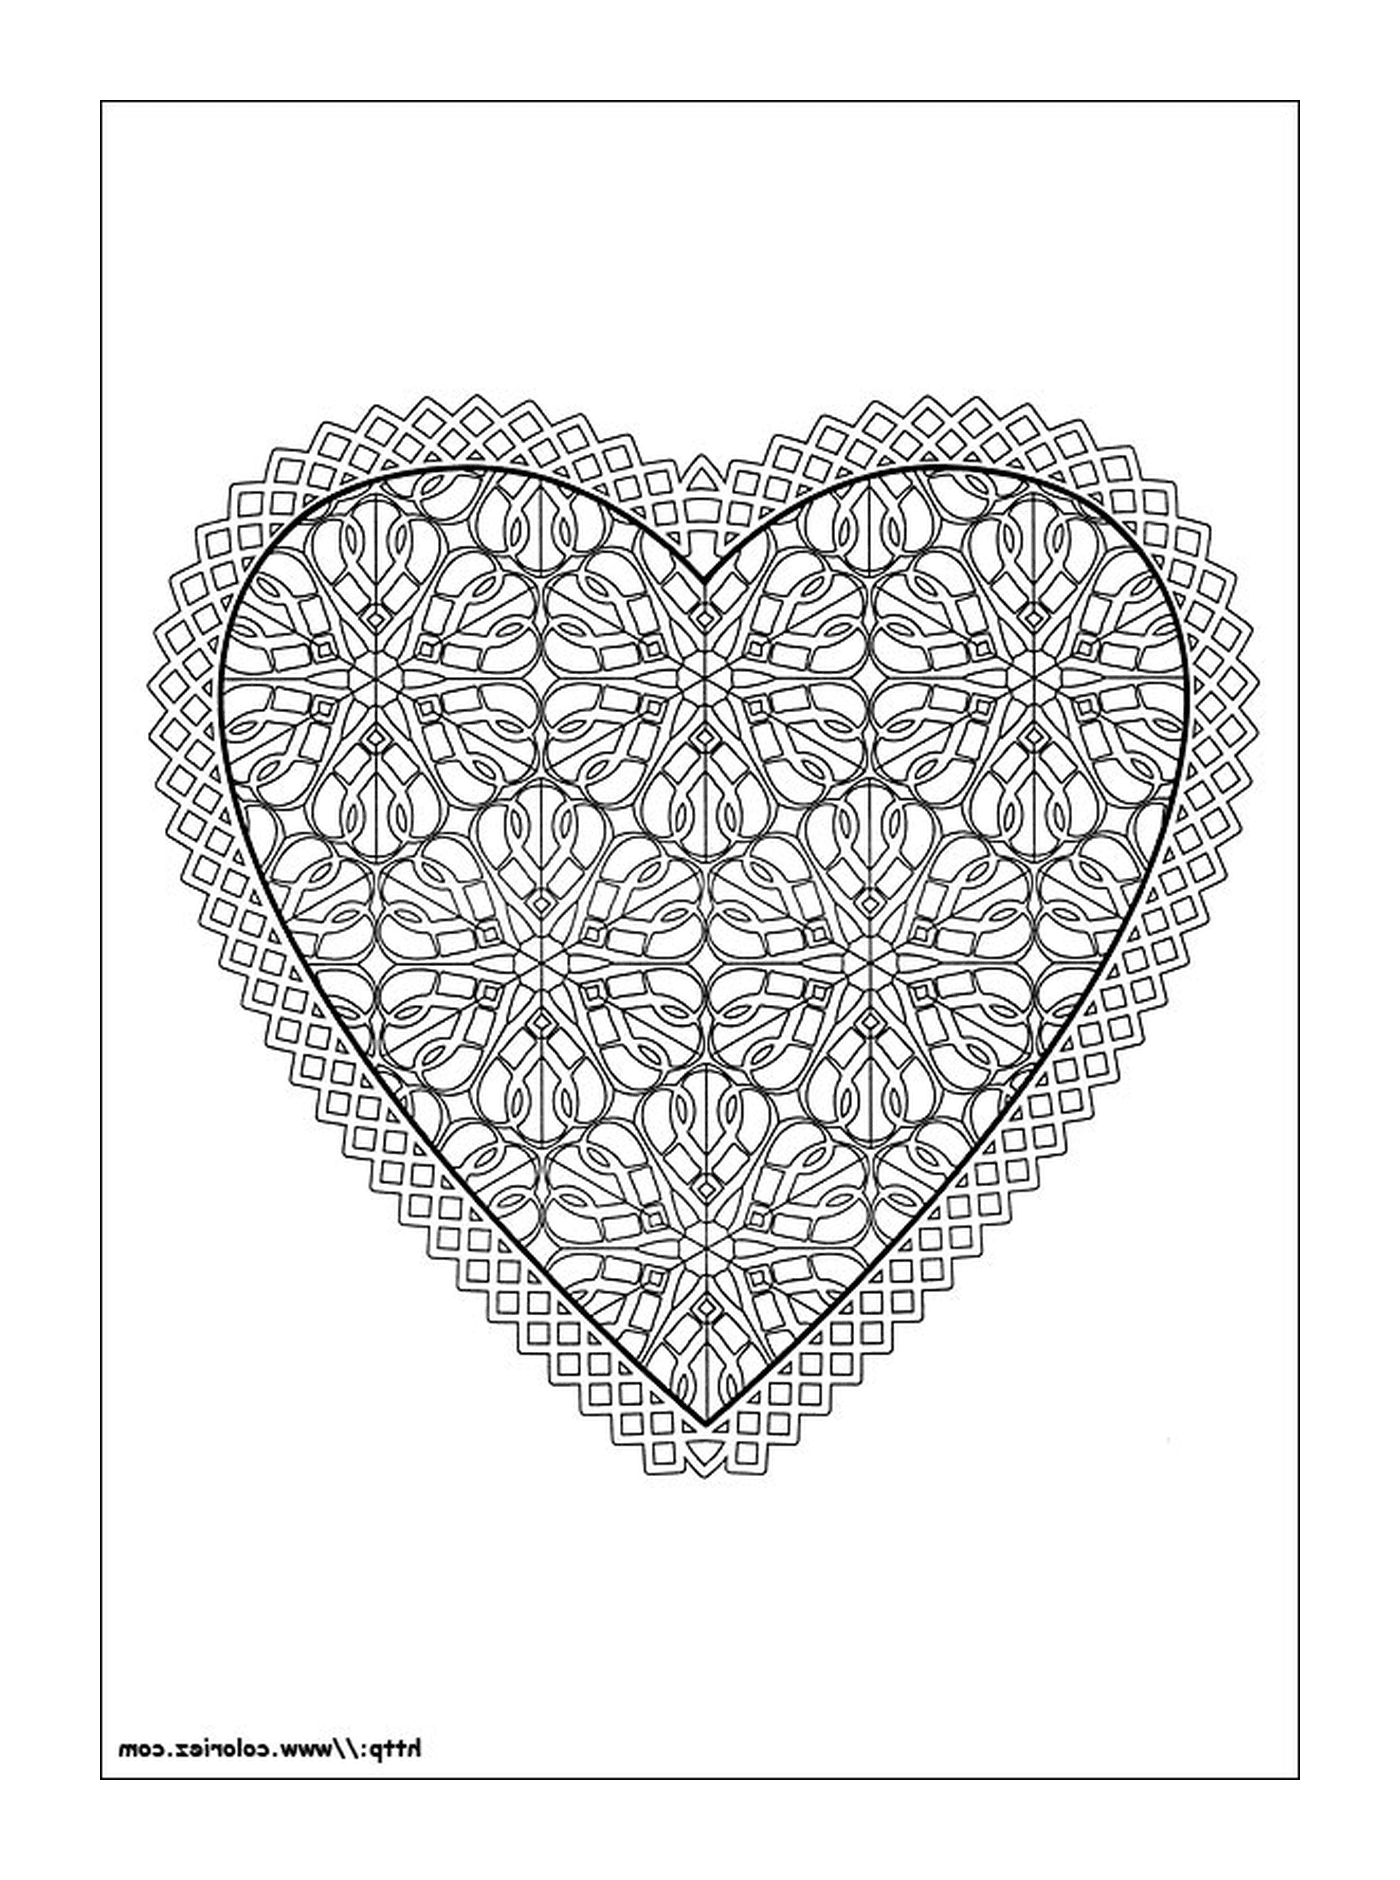  Valentine's Day, delicate heart 